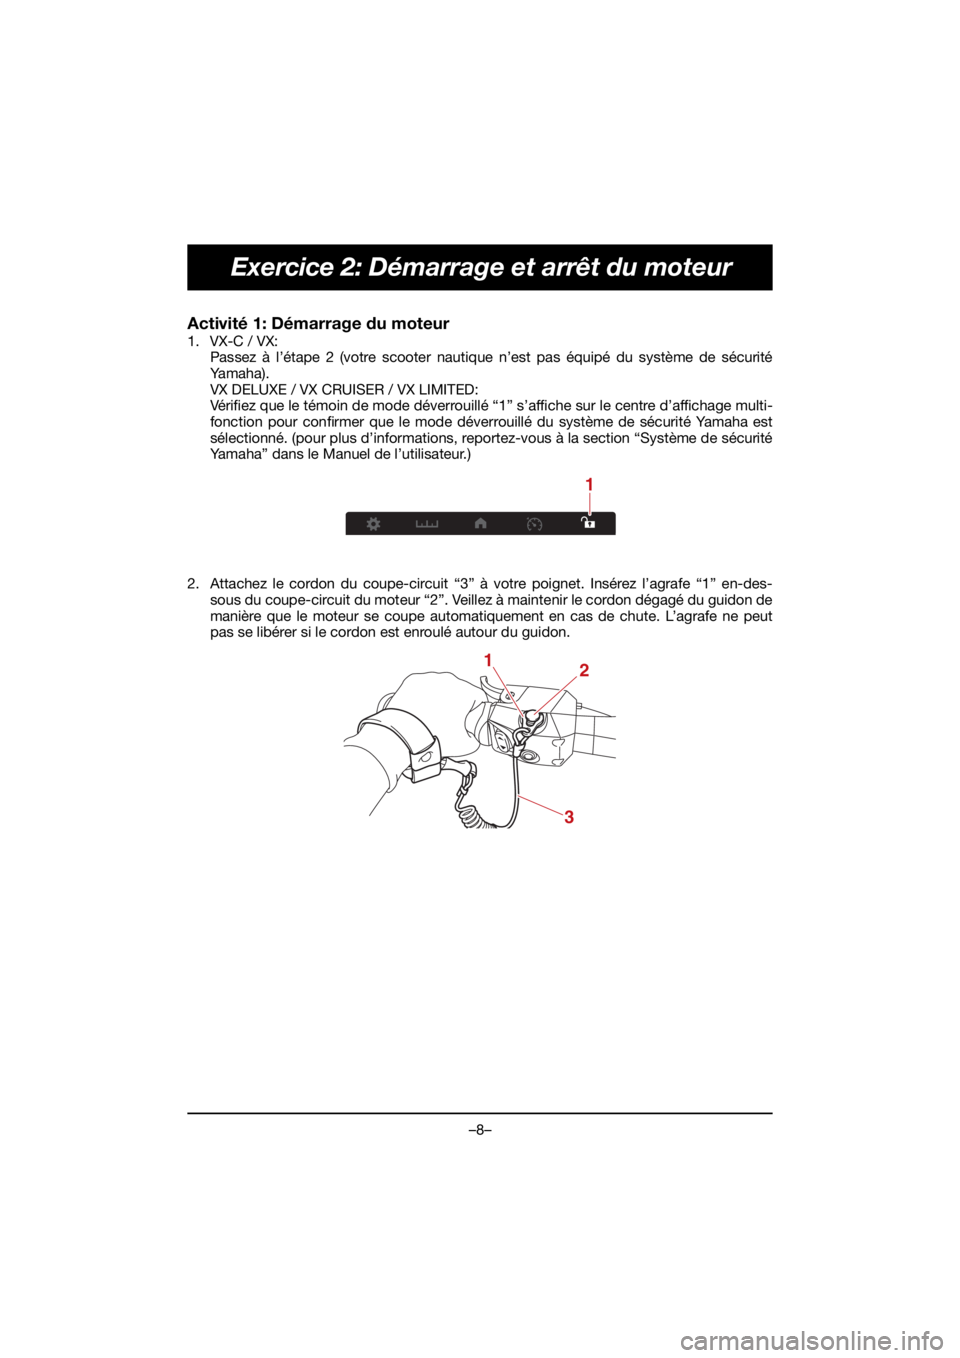 YAMAHA VX DELUXE 2021  Notices Demploi (in French) –8–
Exercice 2: Démarrage et arrêt du moteur
Activité 1: Démarrage du moteur 
1. VX-C / VX:Passez à l’étape 2 (votre scooter nautique n’est pas équipé du système de sécurité
Ya m a 